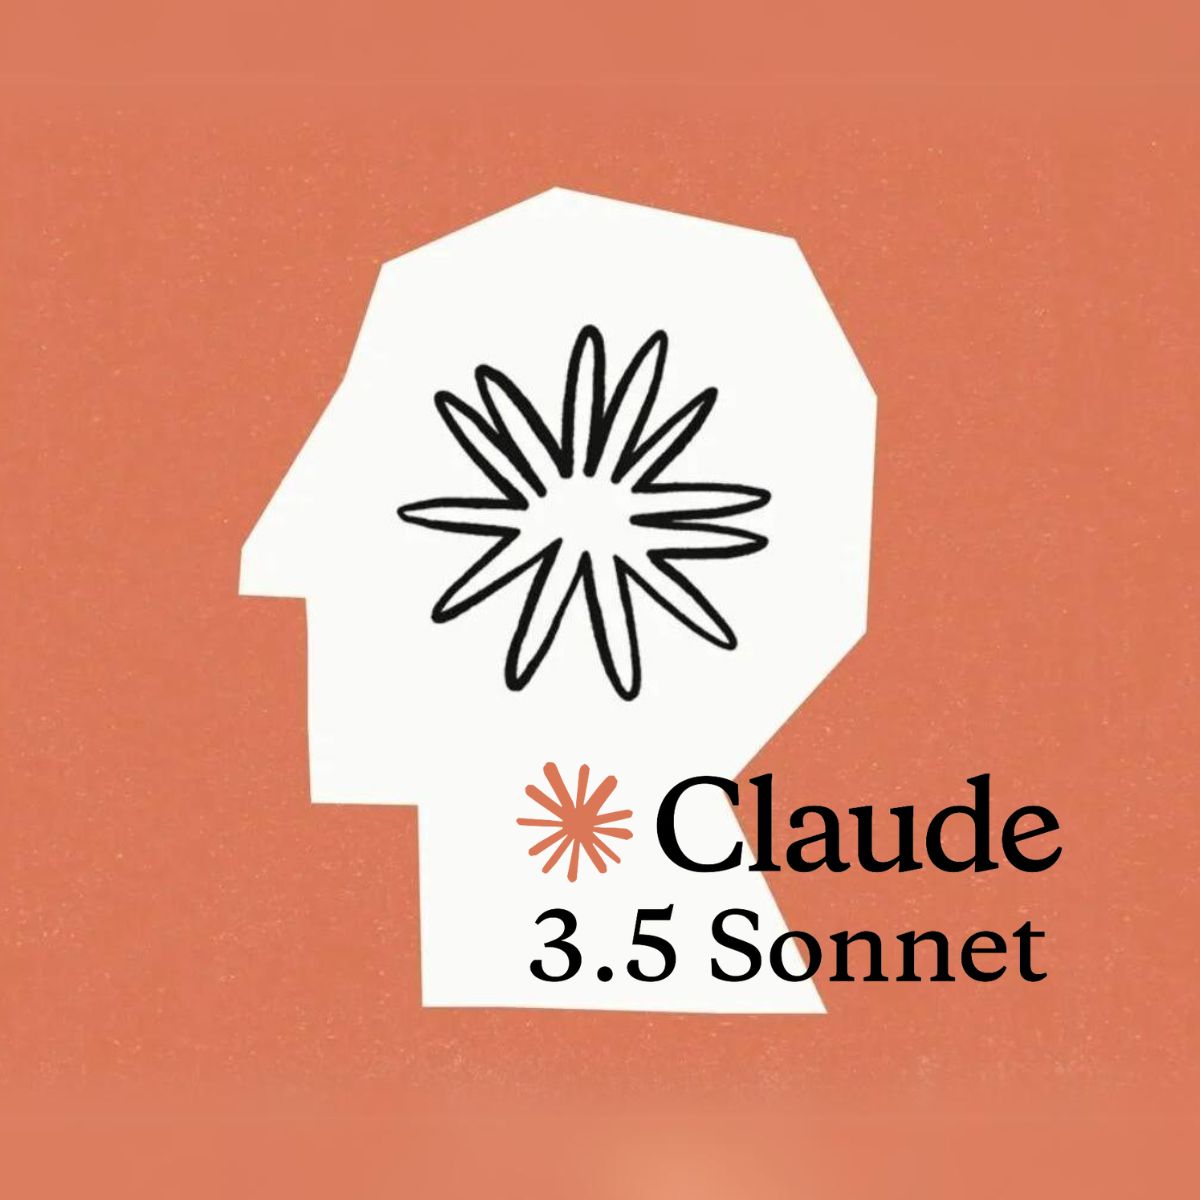 Anthropic sfida OpenAI con Claude 3.5 Sonnet: un nuovo capitolo nell’AI